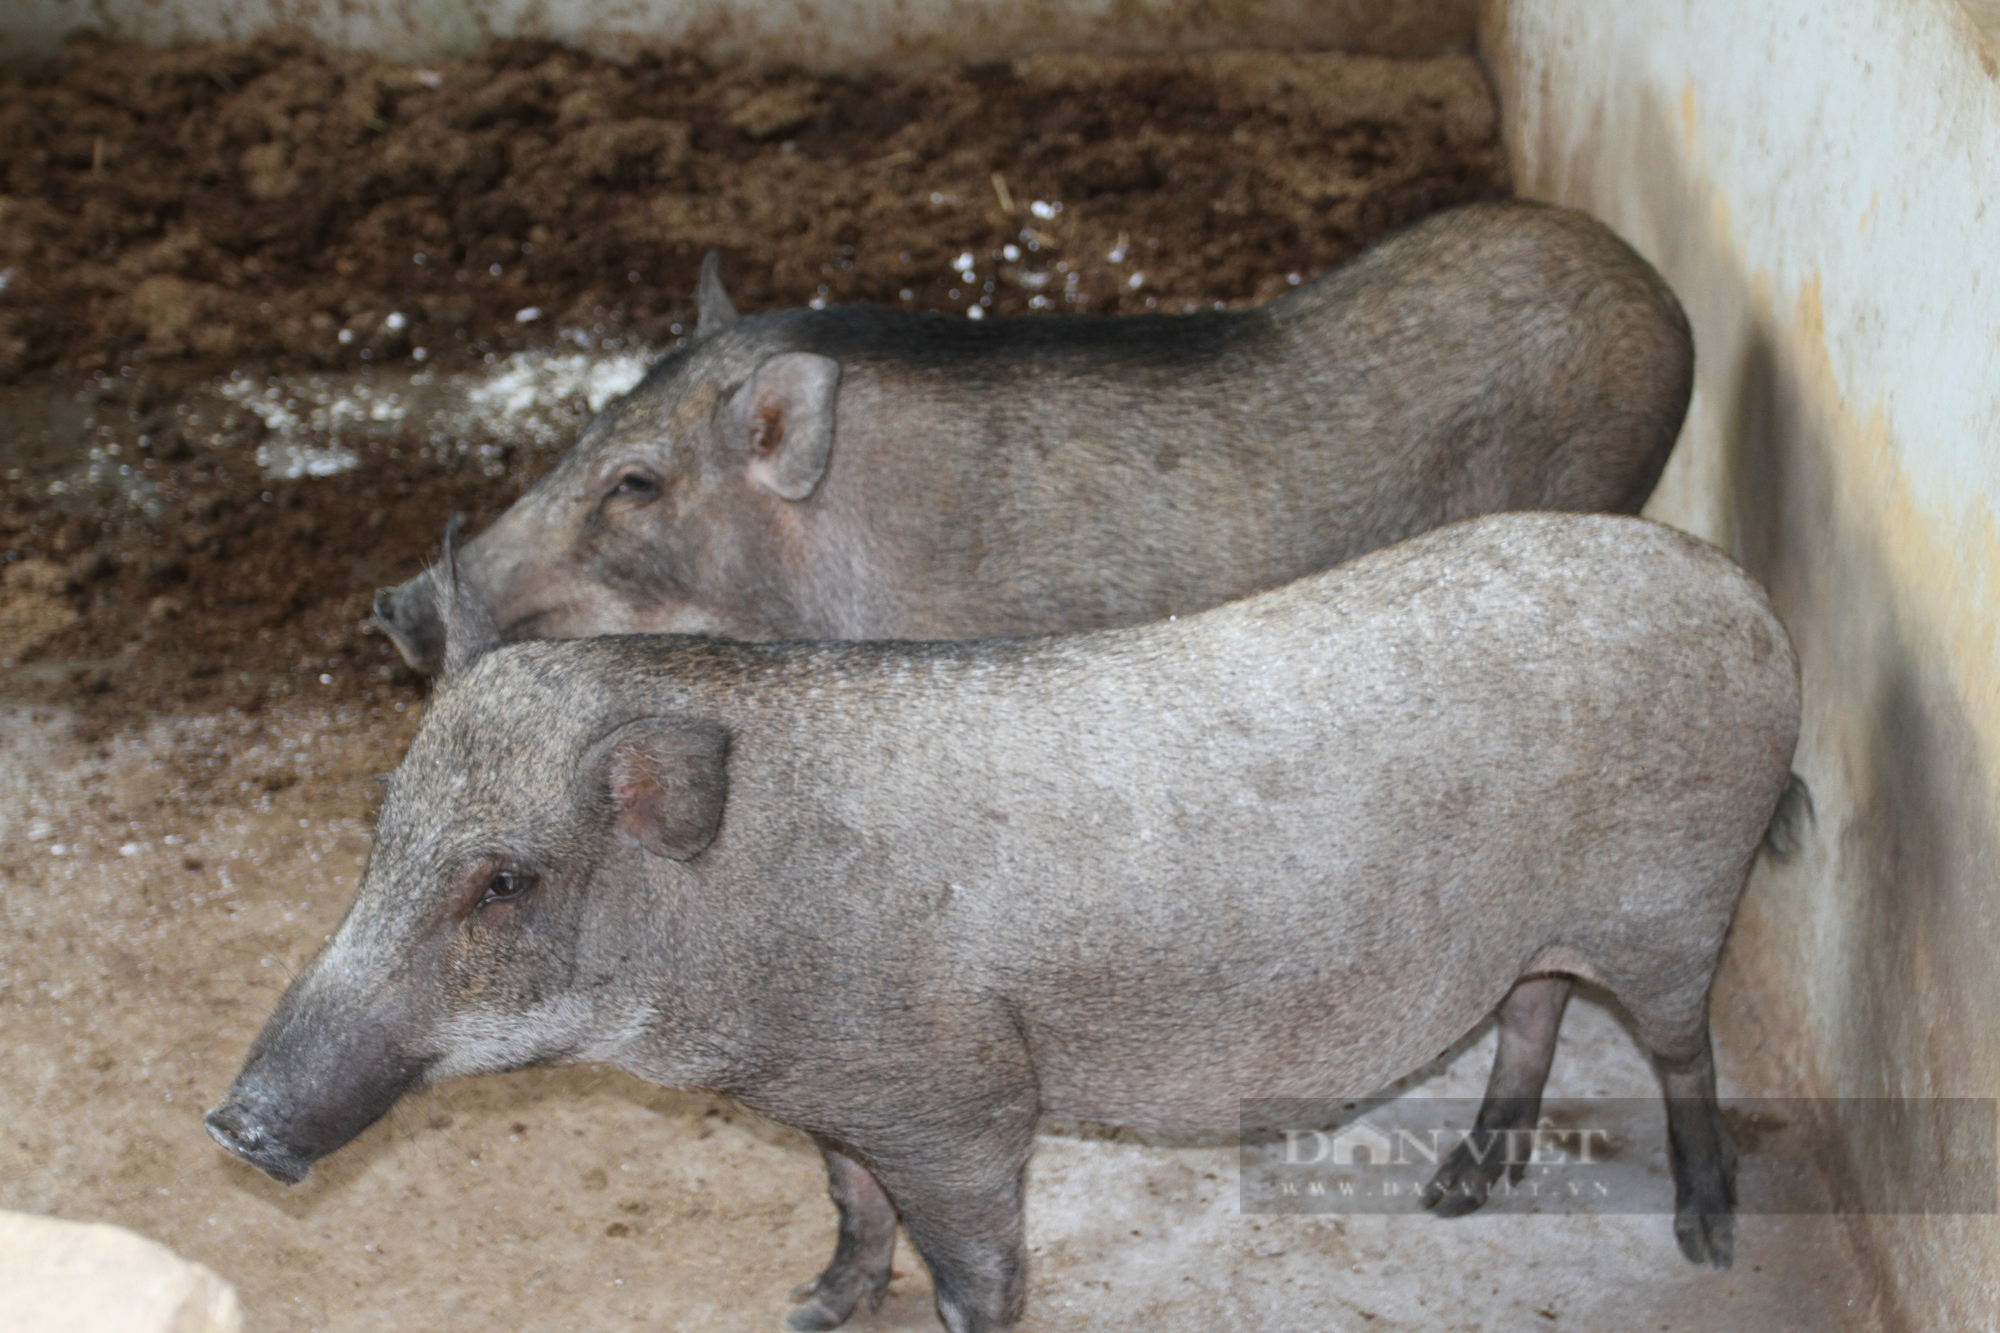 Thái Nguyên: Định hướng sản xuất sản phẩm sạch, HTX này nuôi lợn rừng chỉ cho ăn toàn rau củ quả - Ảnh 4.